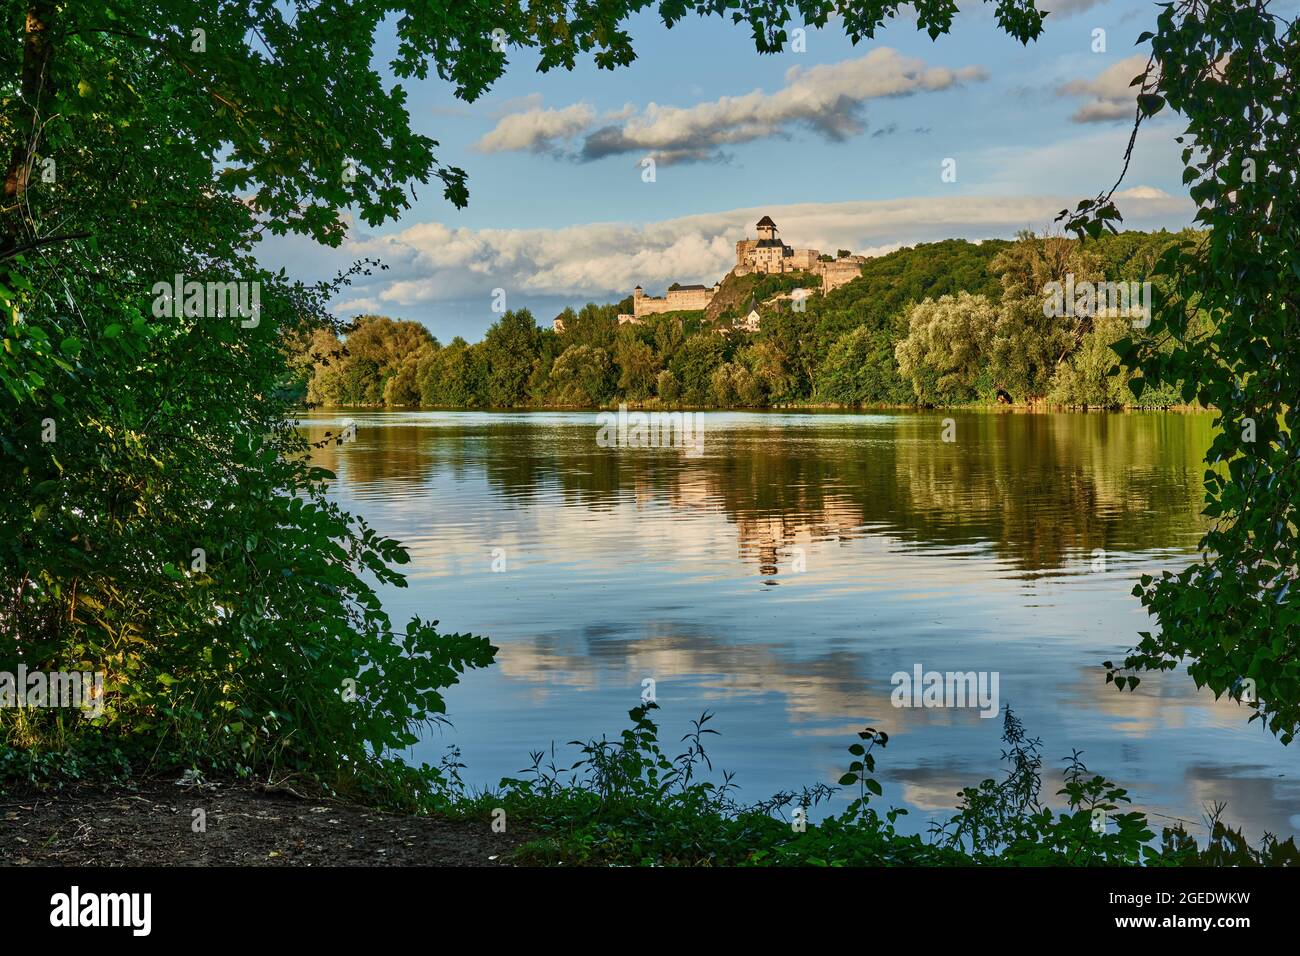 Castello sopra il fiume Vah. Vista della sponda destra. Incorniciato da foglie di albero. Riflesso di belle nuvole sulla superficie dell'acqua. Trencin, Slovacchia. Foto Stock